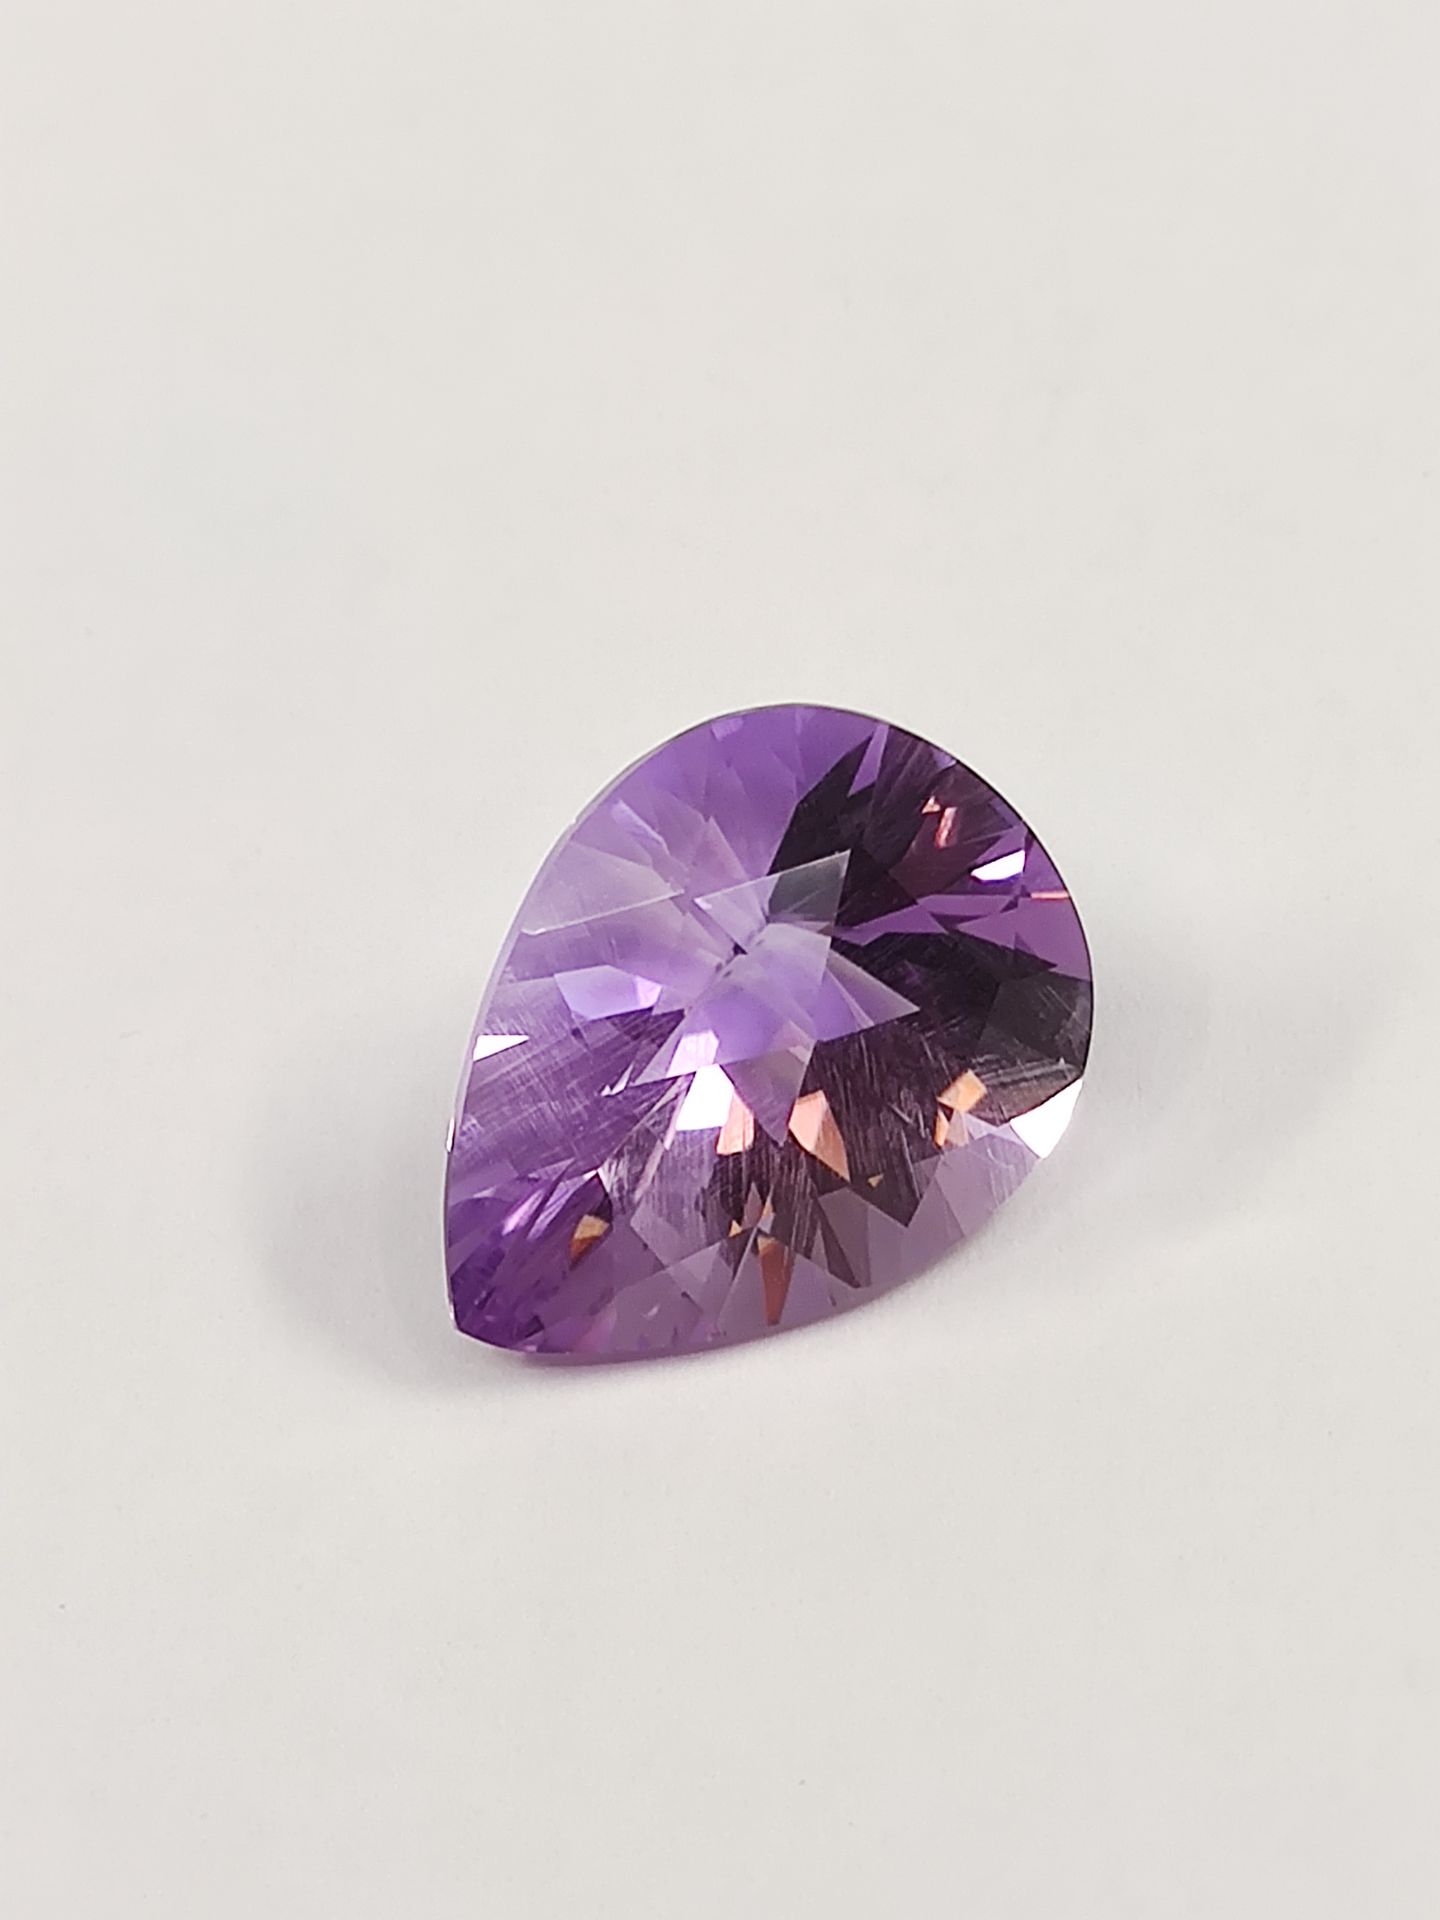 Null AMETHYSTE violette VVS	 poire, 11.12 carats	


Dim: 18,4 X 14